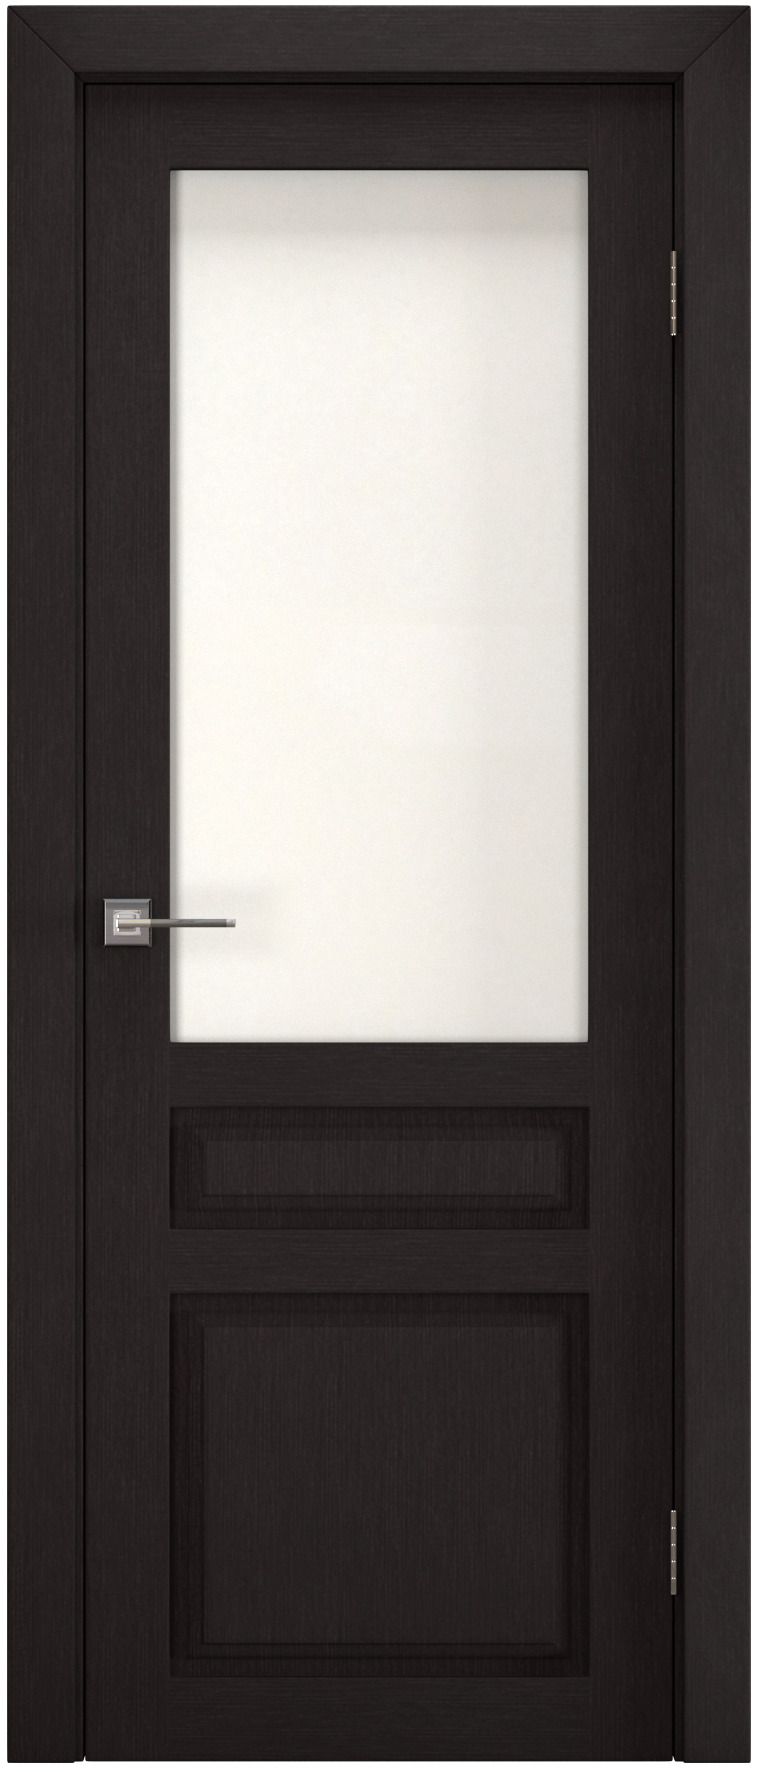 Полотно дверное остекленное Эко-шпон Британь 2000*900 Каштан, ст. рисунок "Хрусталь"